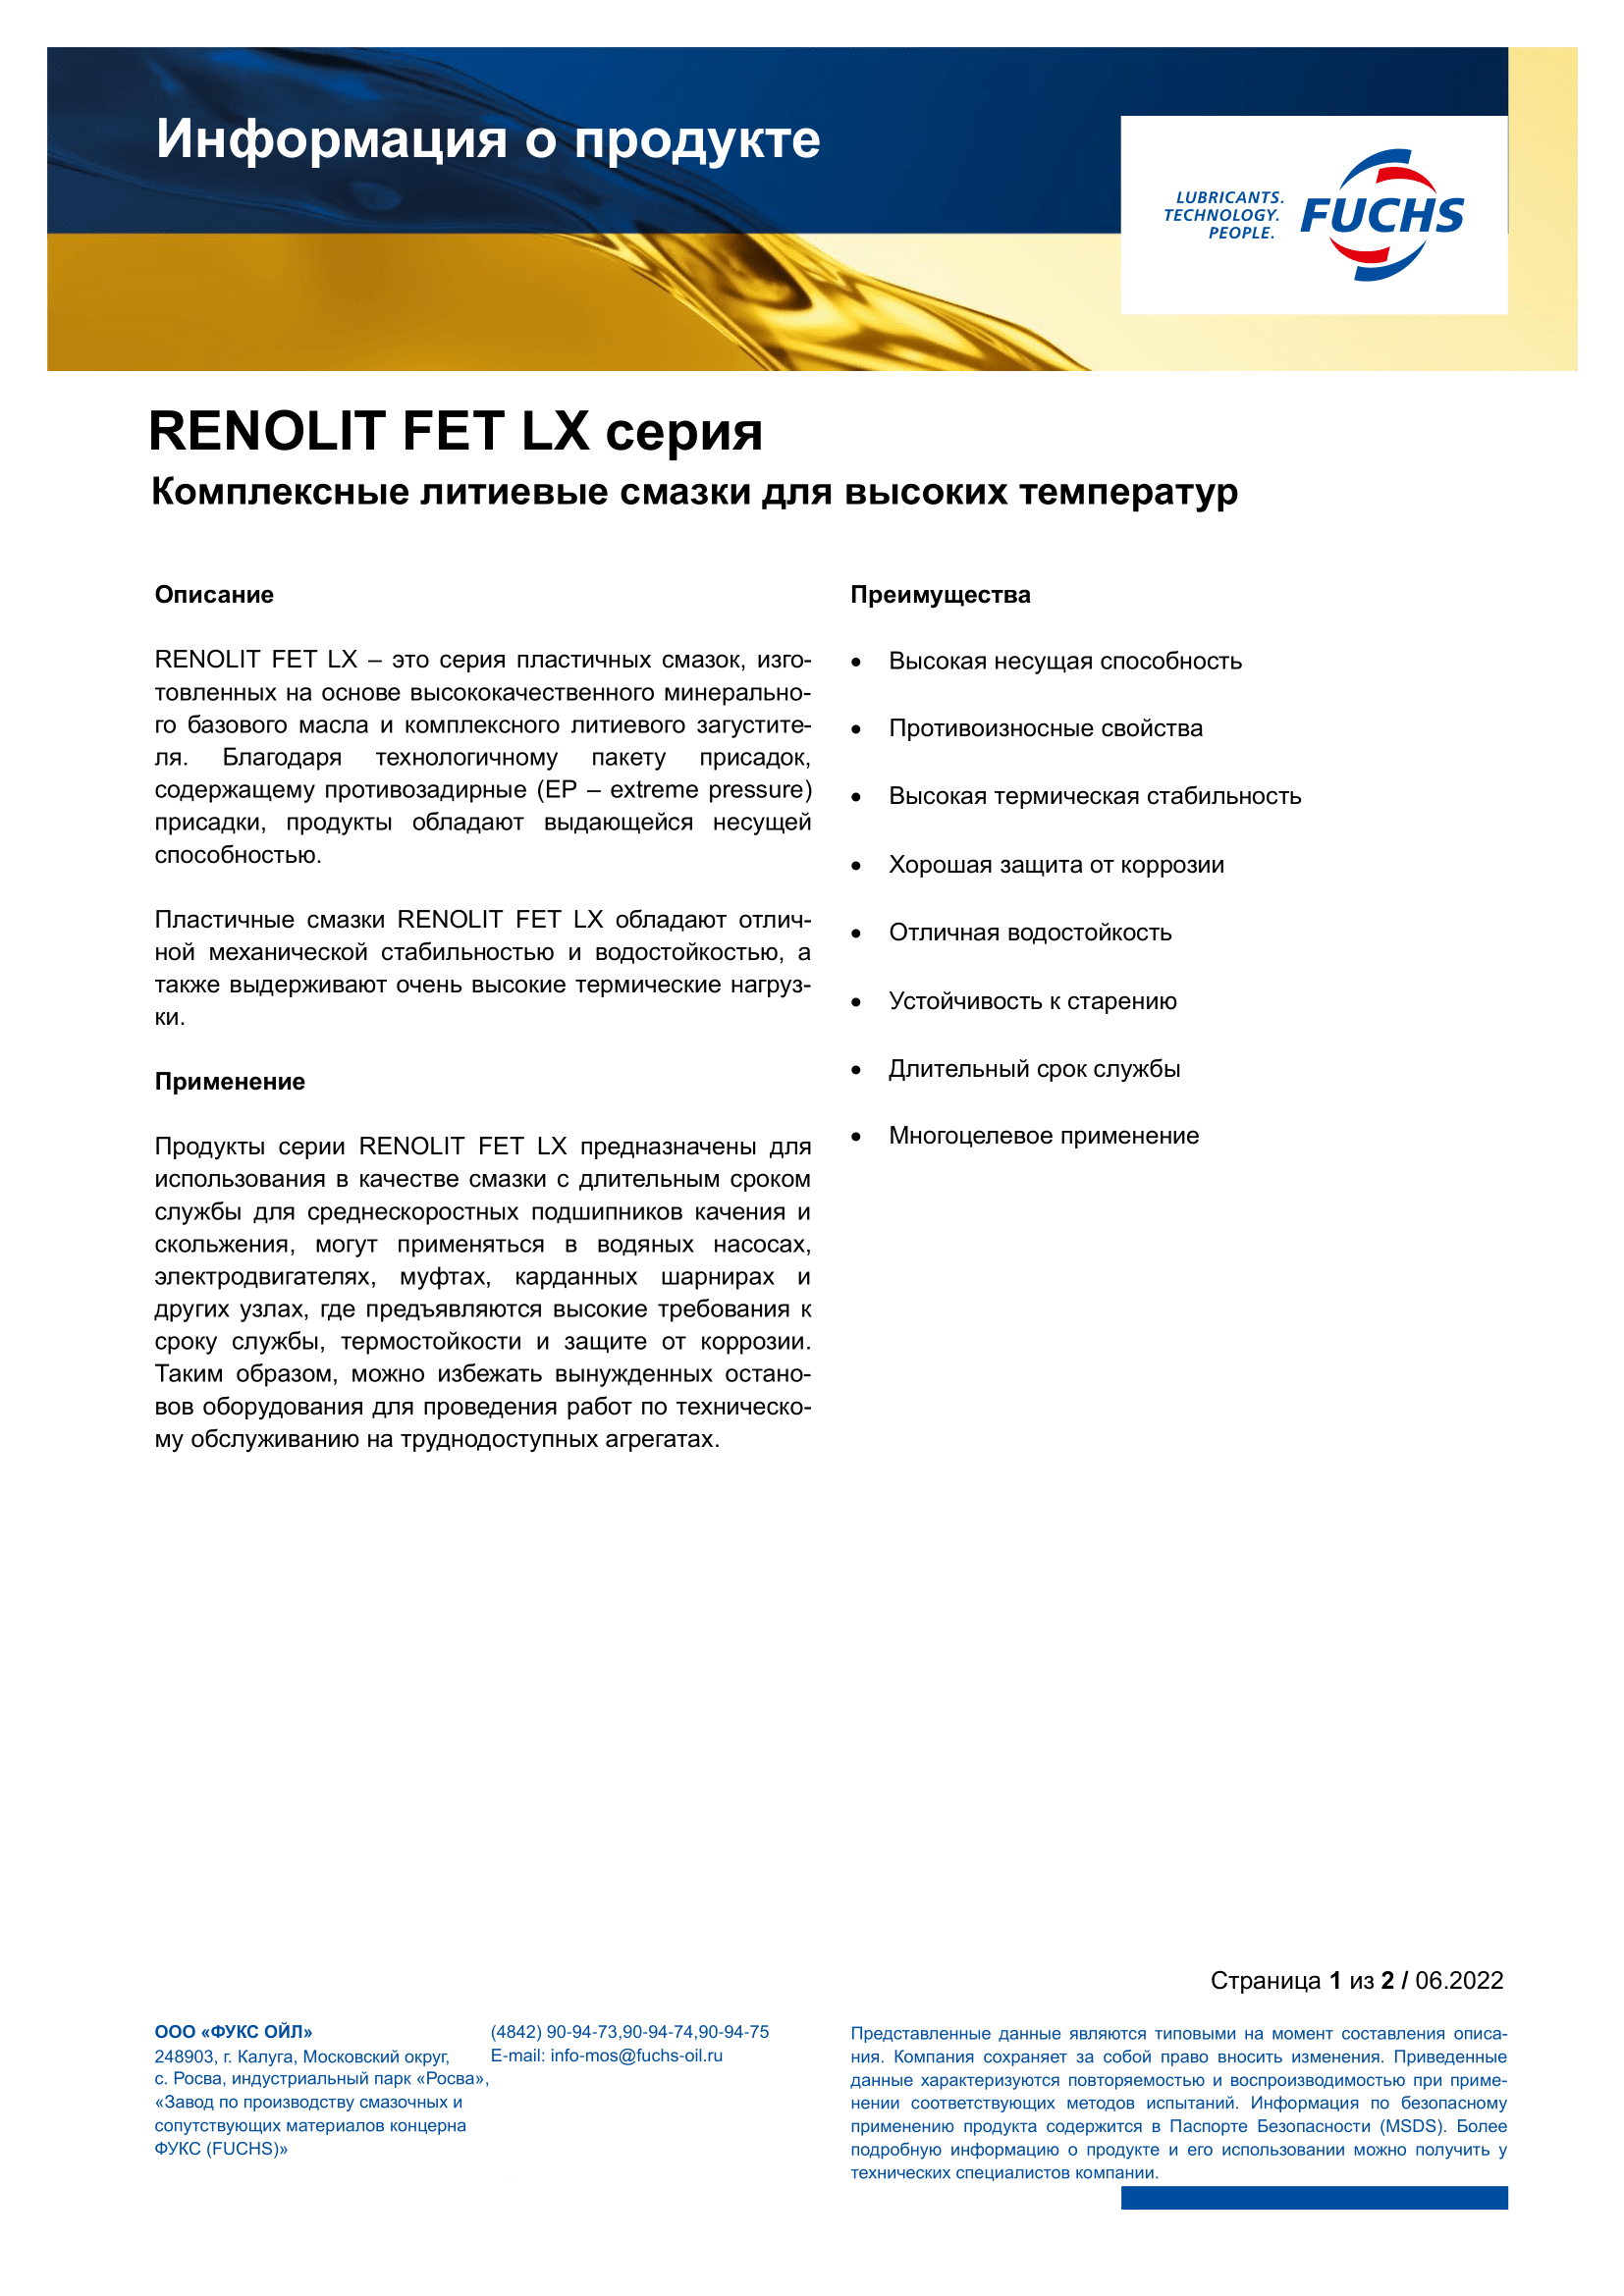 RENOLIT FET LX 2